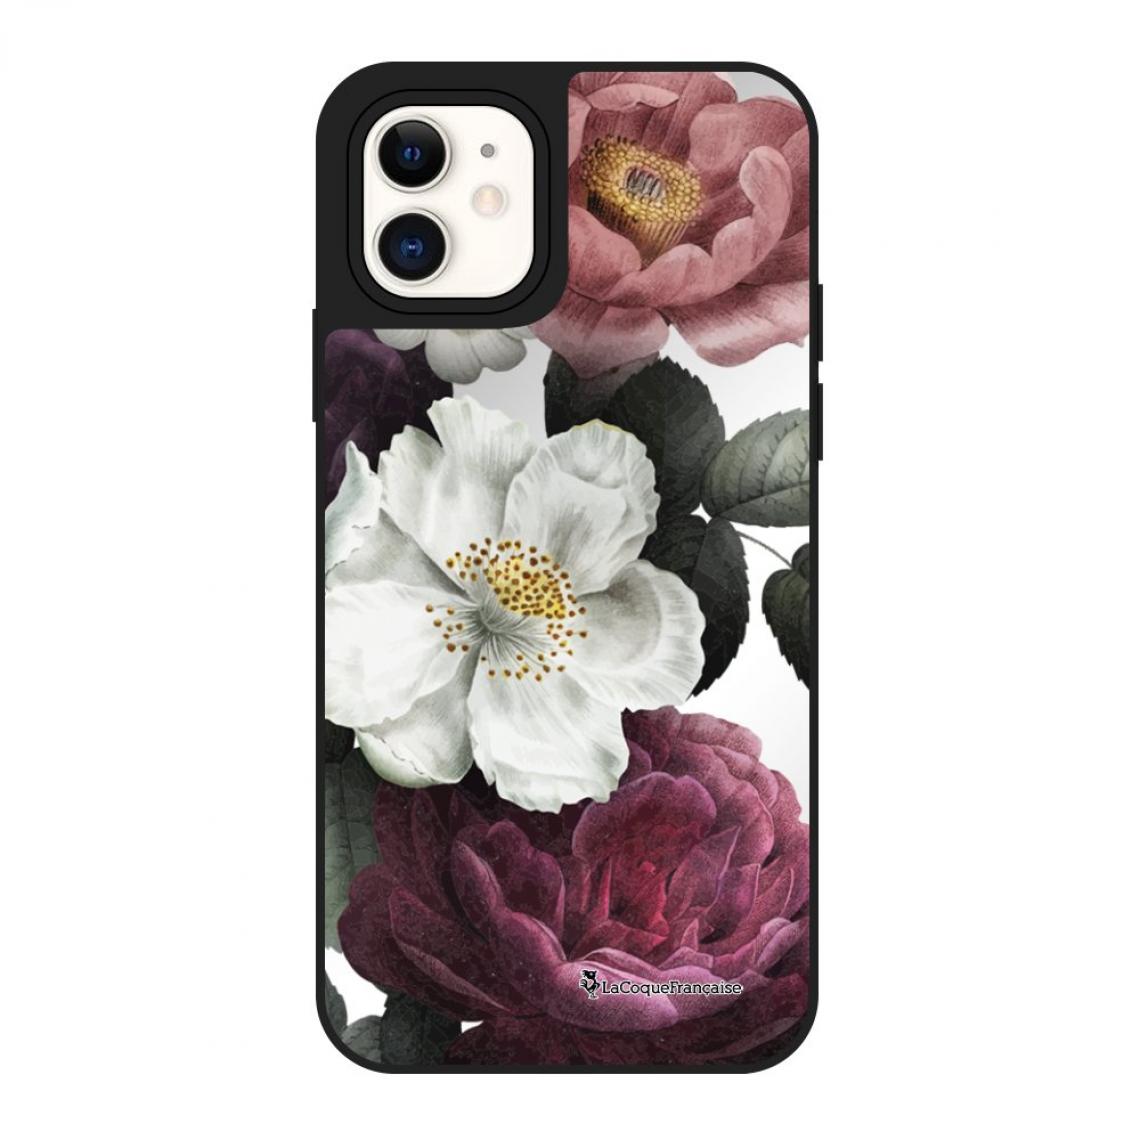 La Coque Francaise - Coque iPhone 12 Mini miroir Fleurs roses La Coque Francaise - Coque, étui smartphone